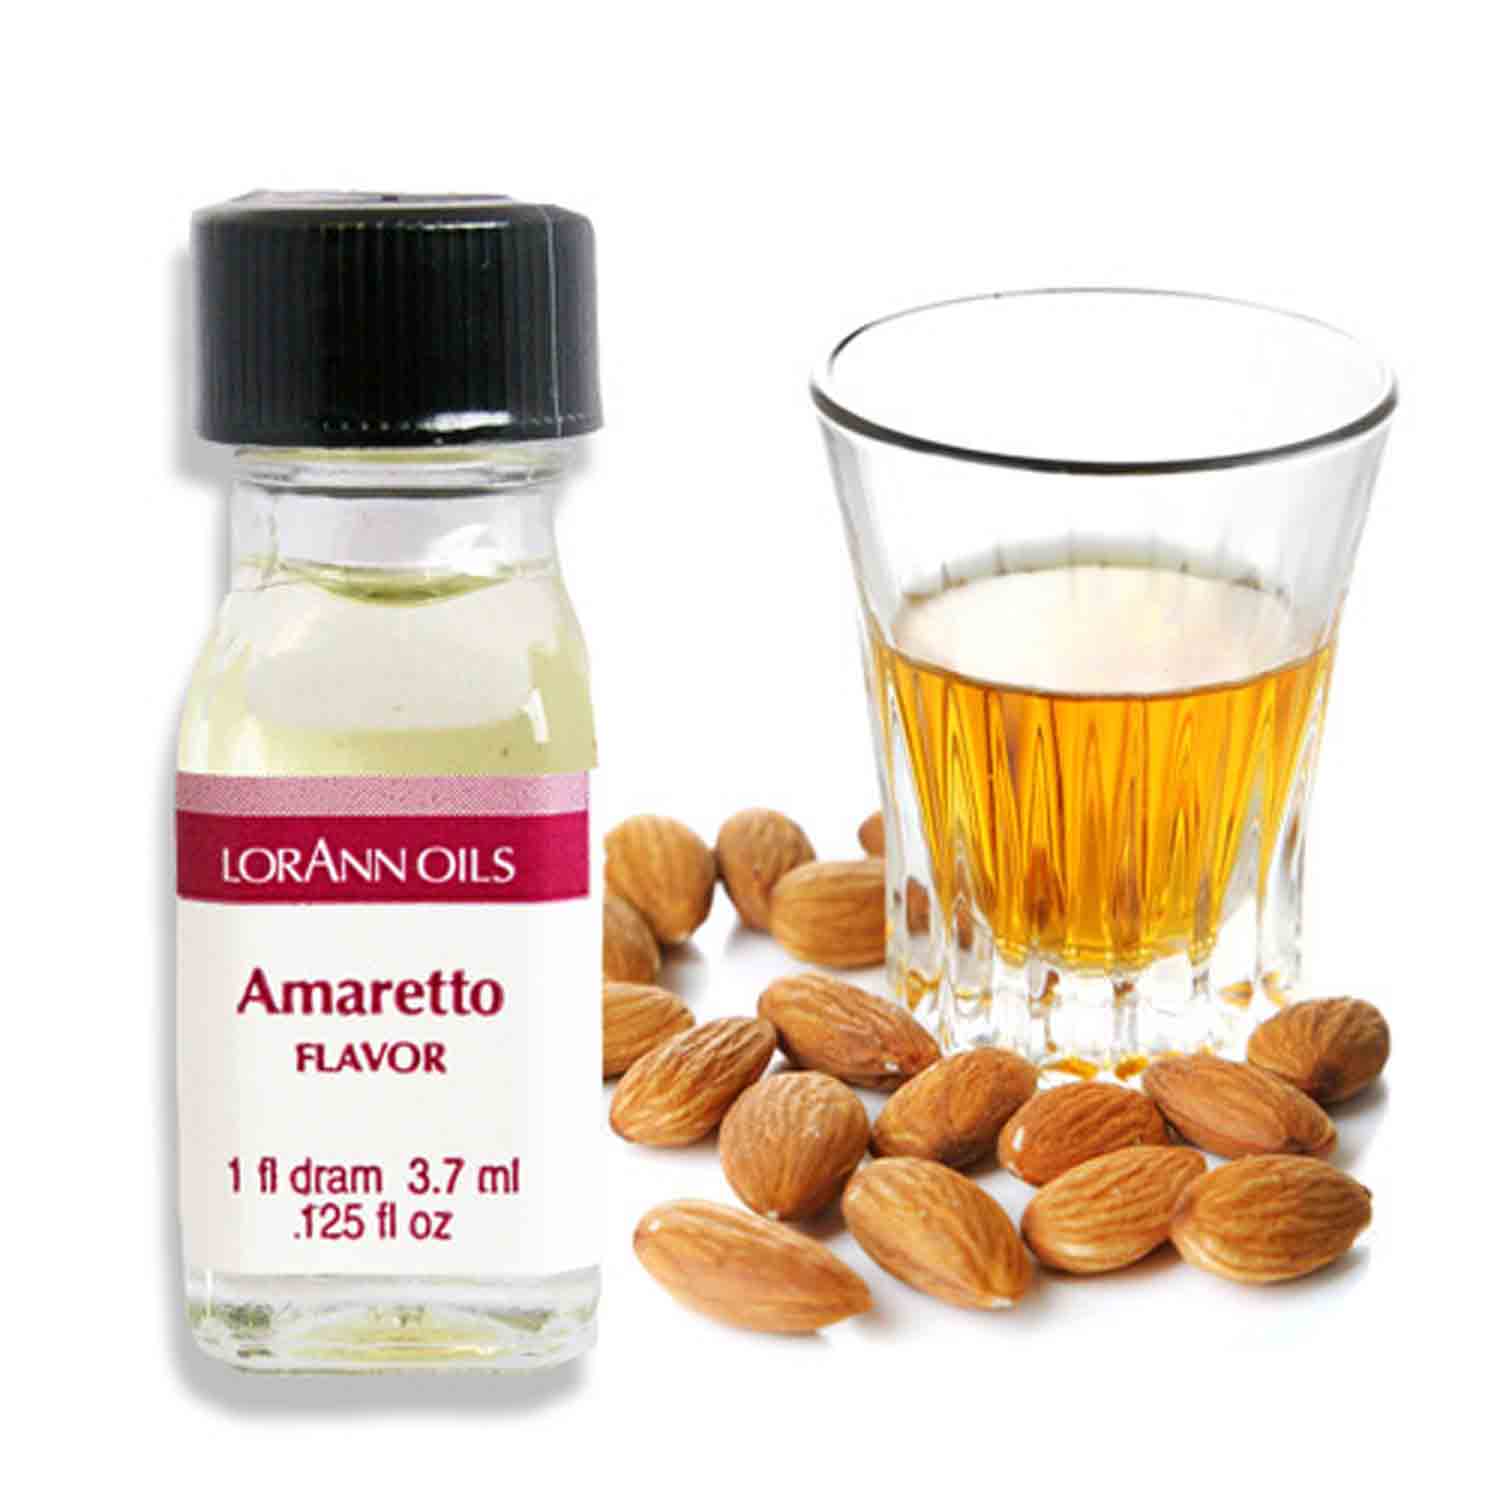 Amaretto Super-Strength Oil